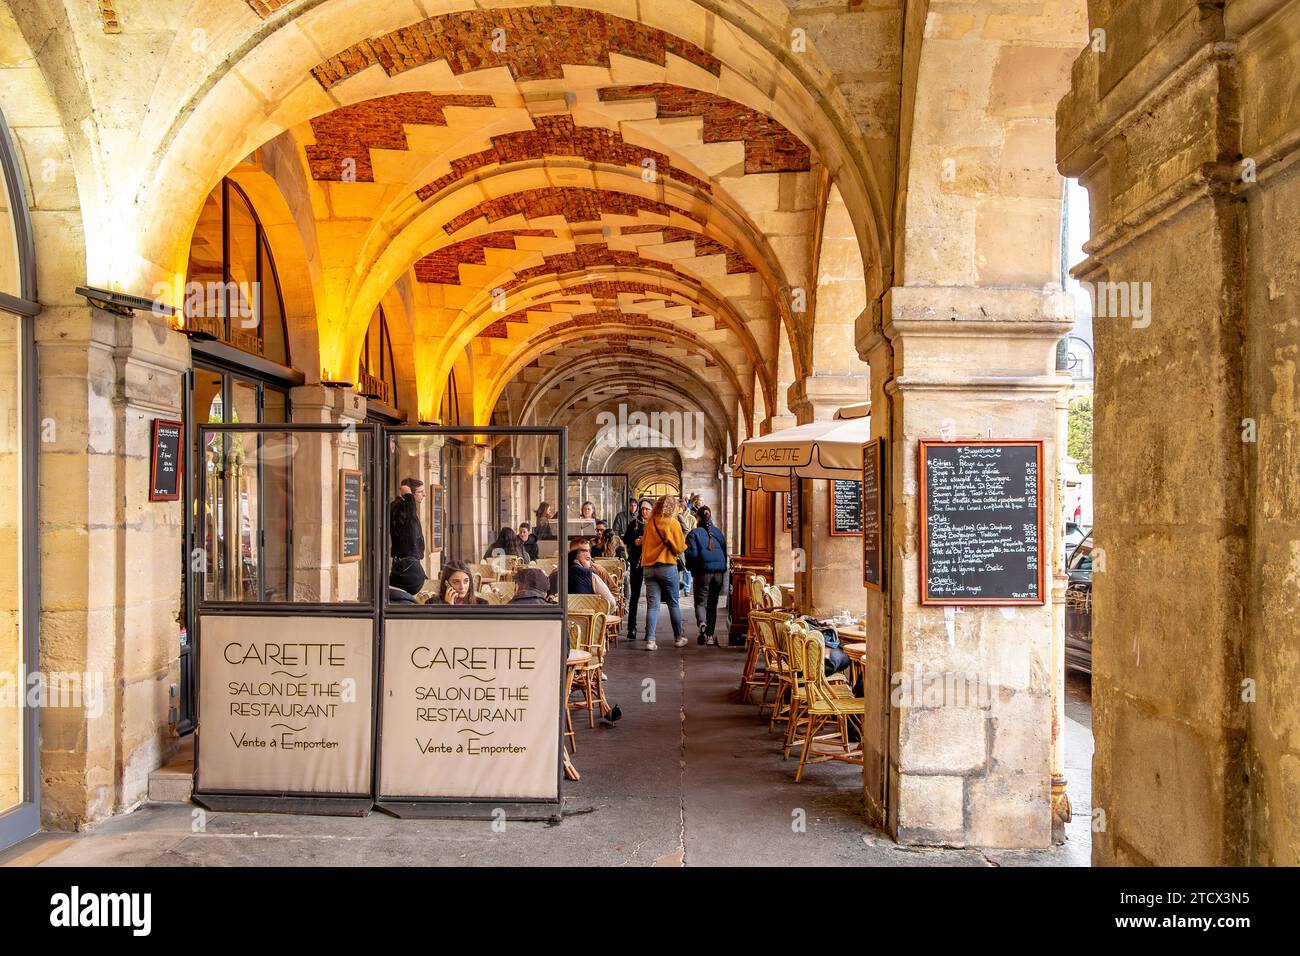 Carette, une pâtisserie et salon de thé situé dans les galeries voûtées de la place des Vosges dans le quartier du Marais à Paris, France Banque D'Images